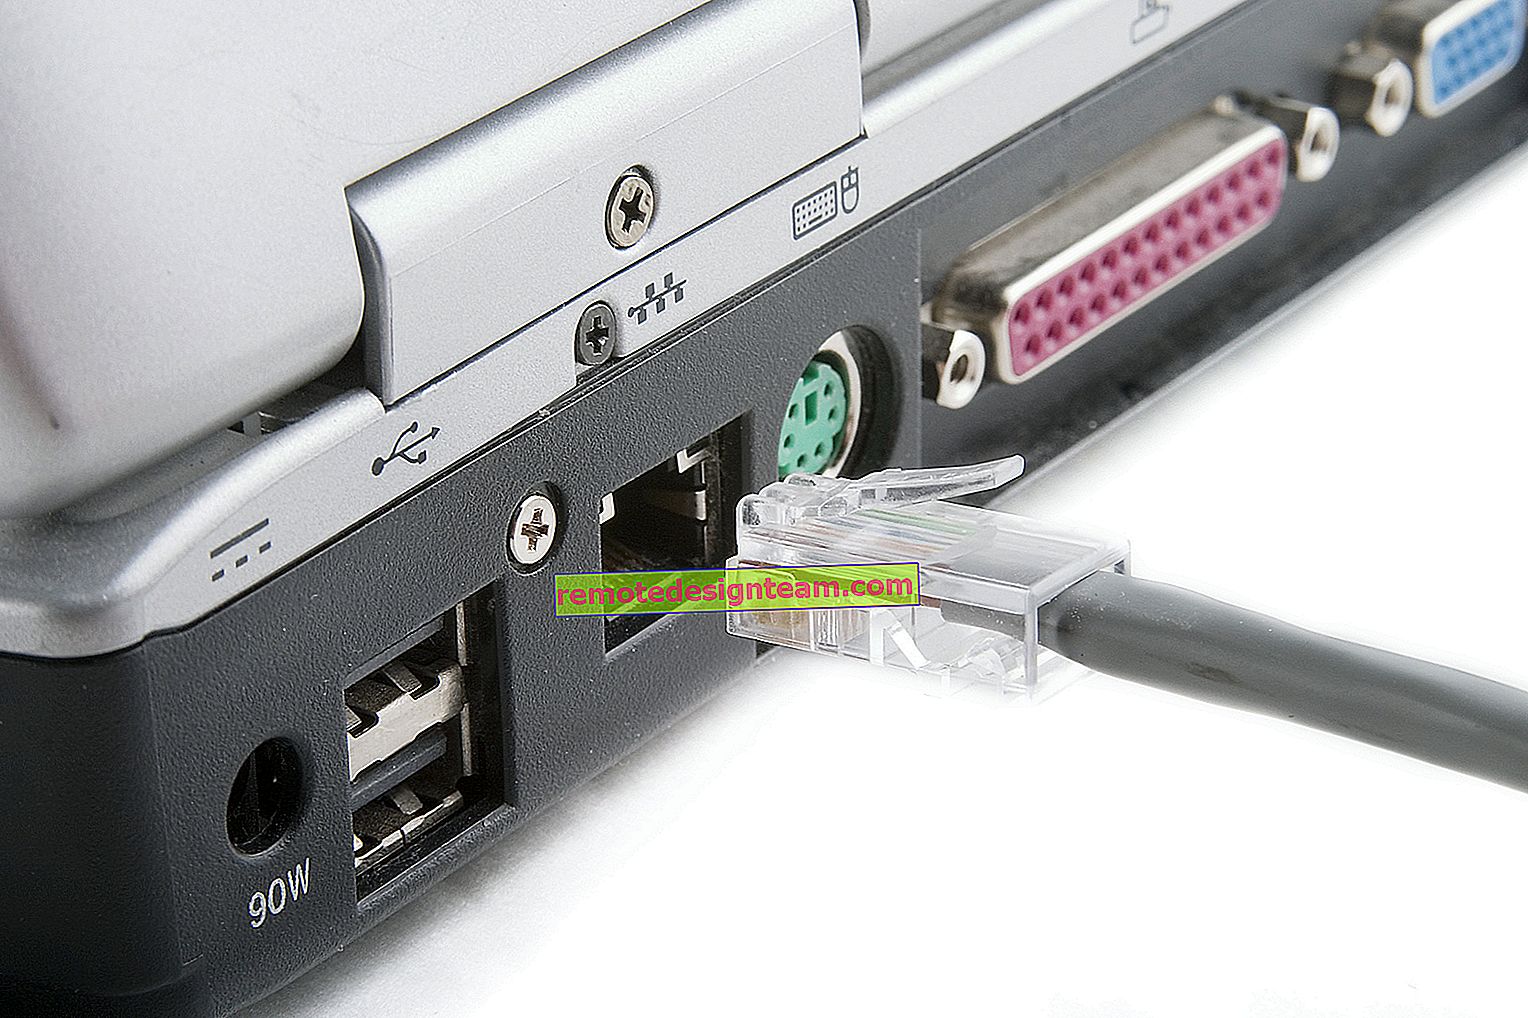 Jak ograniczyć połączenie z routerem na podstawie adresu MAC?